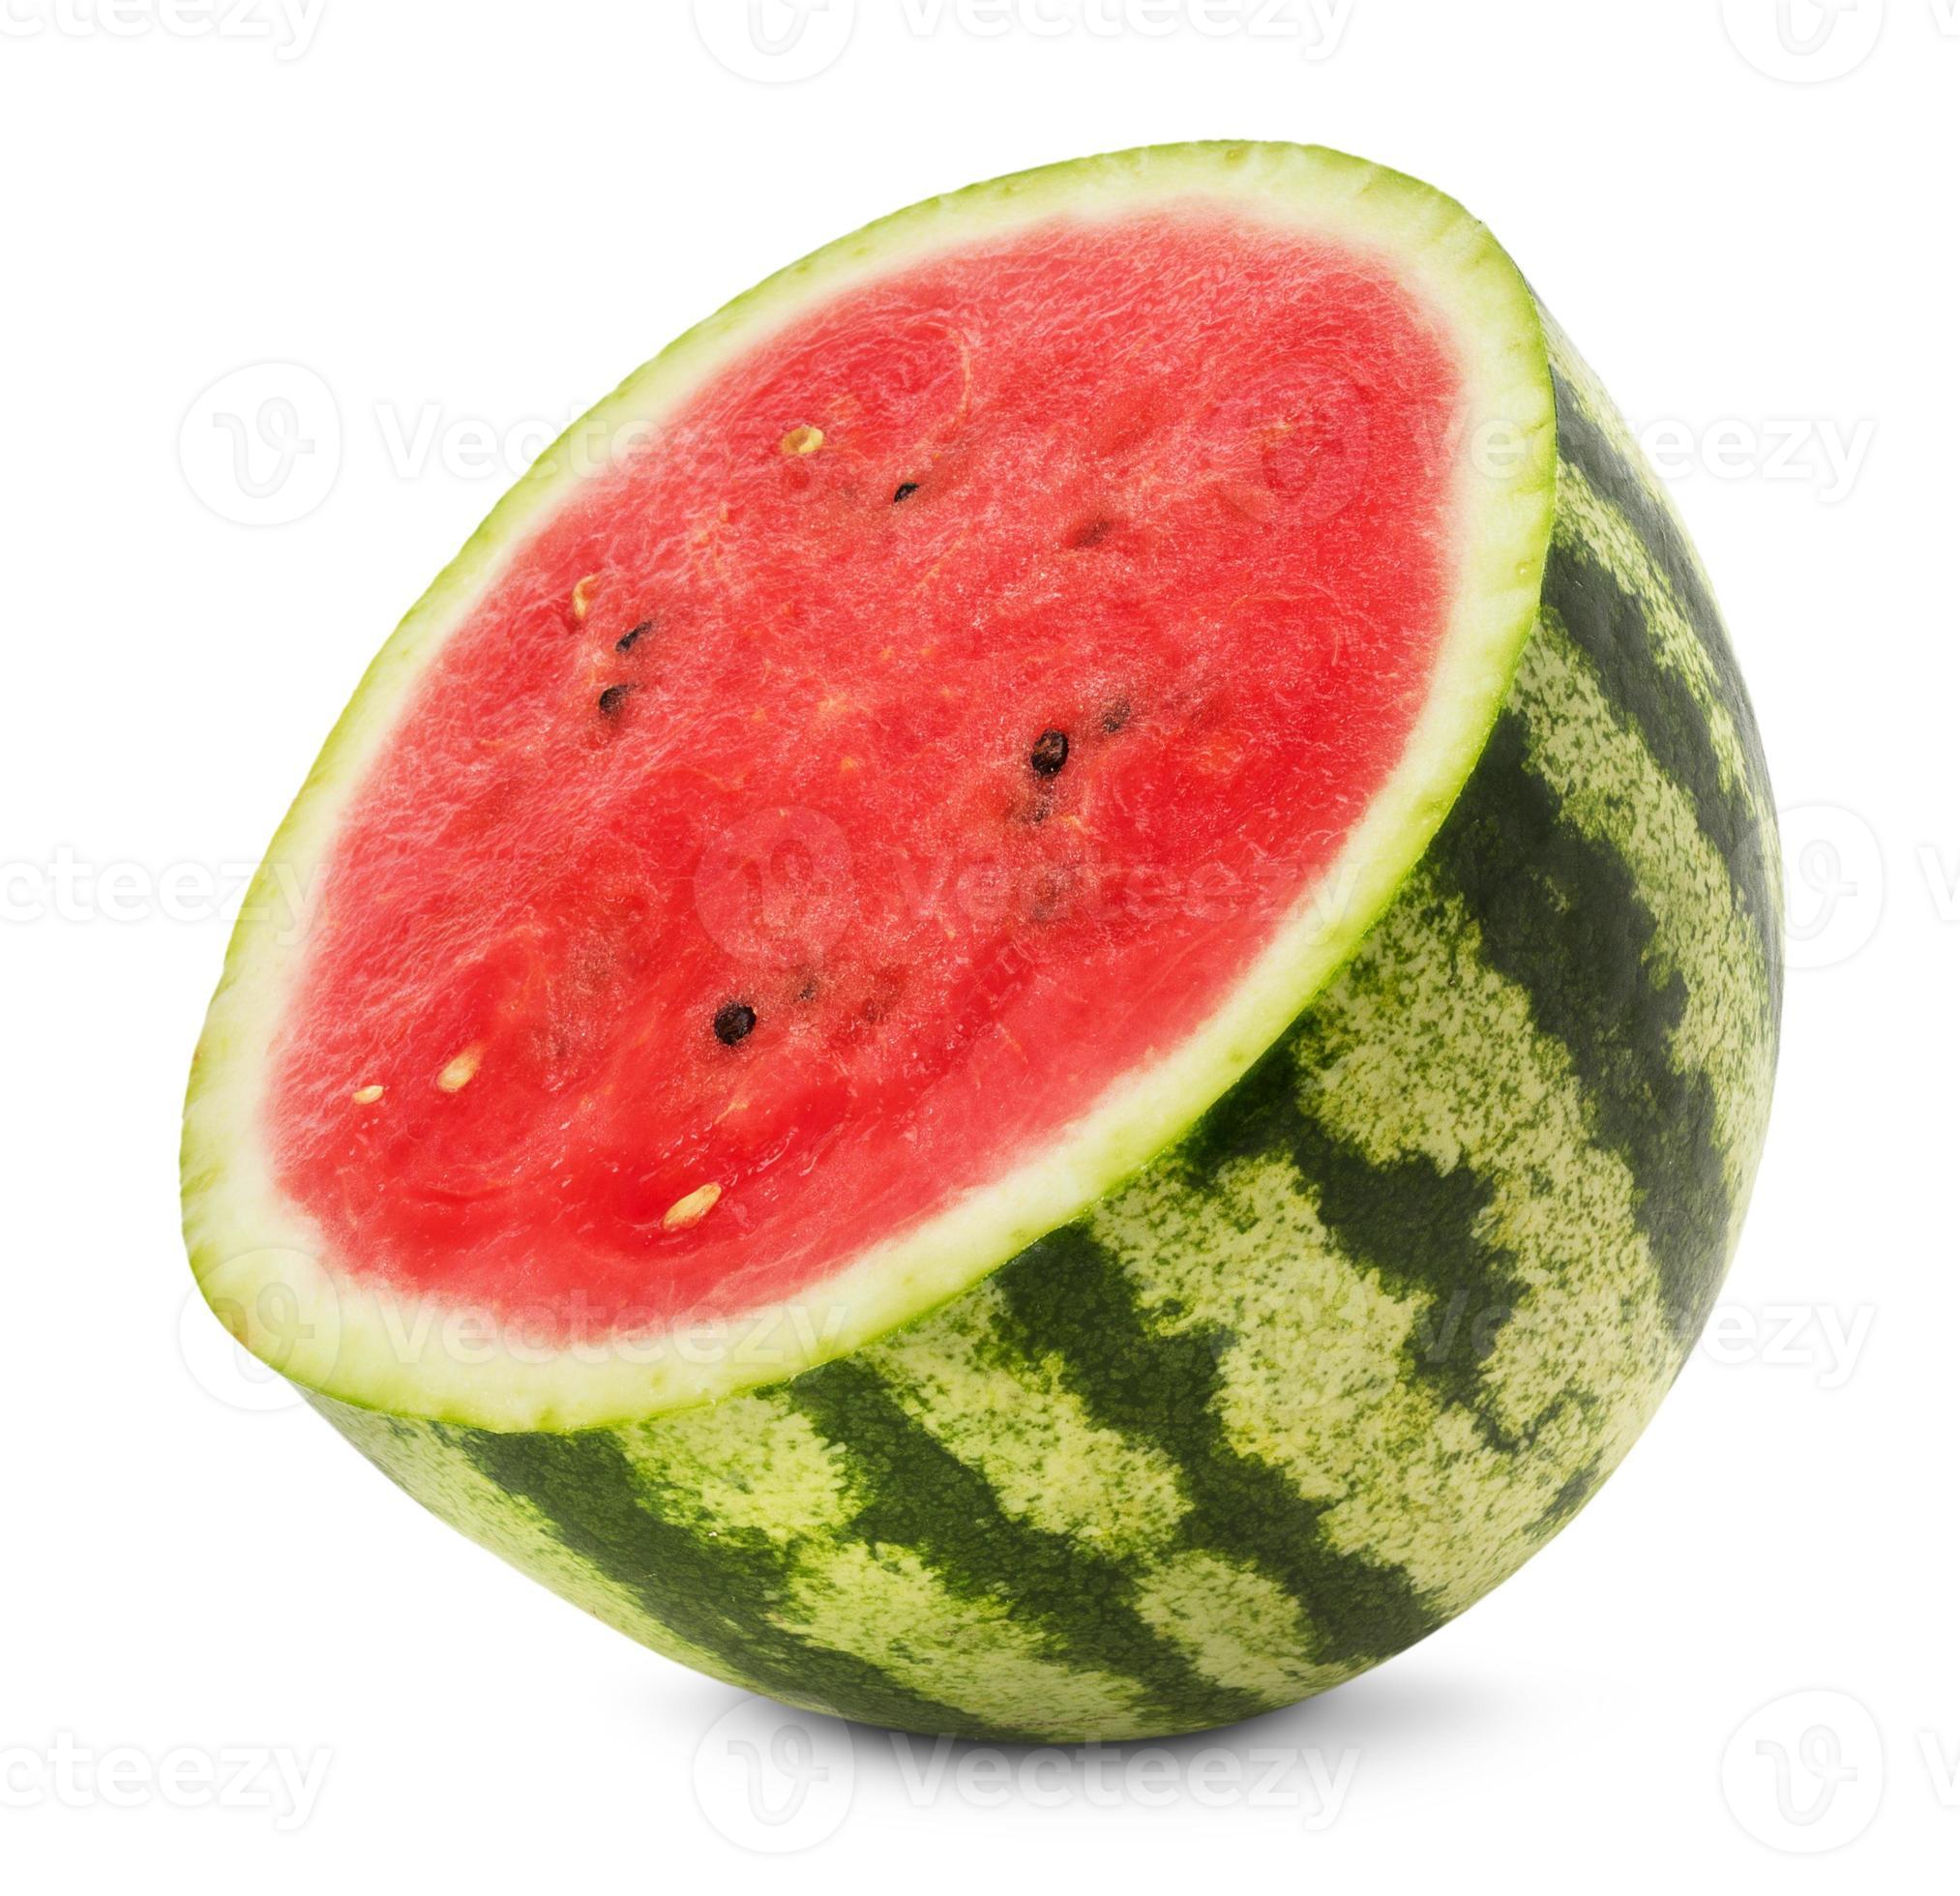 hälften av vattenmelon isolerad på den vita bakgrunden foto